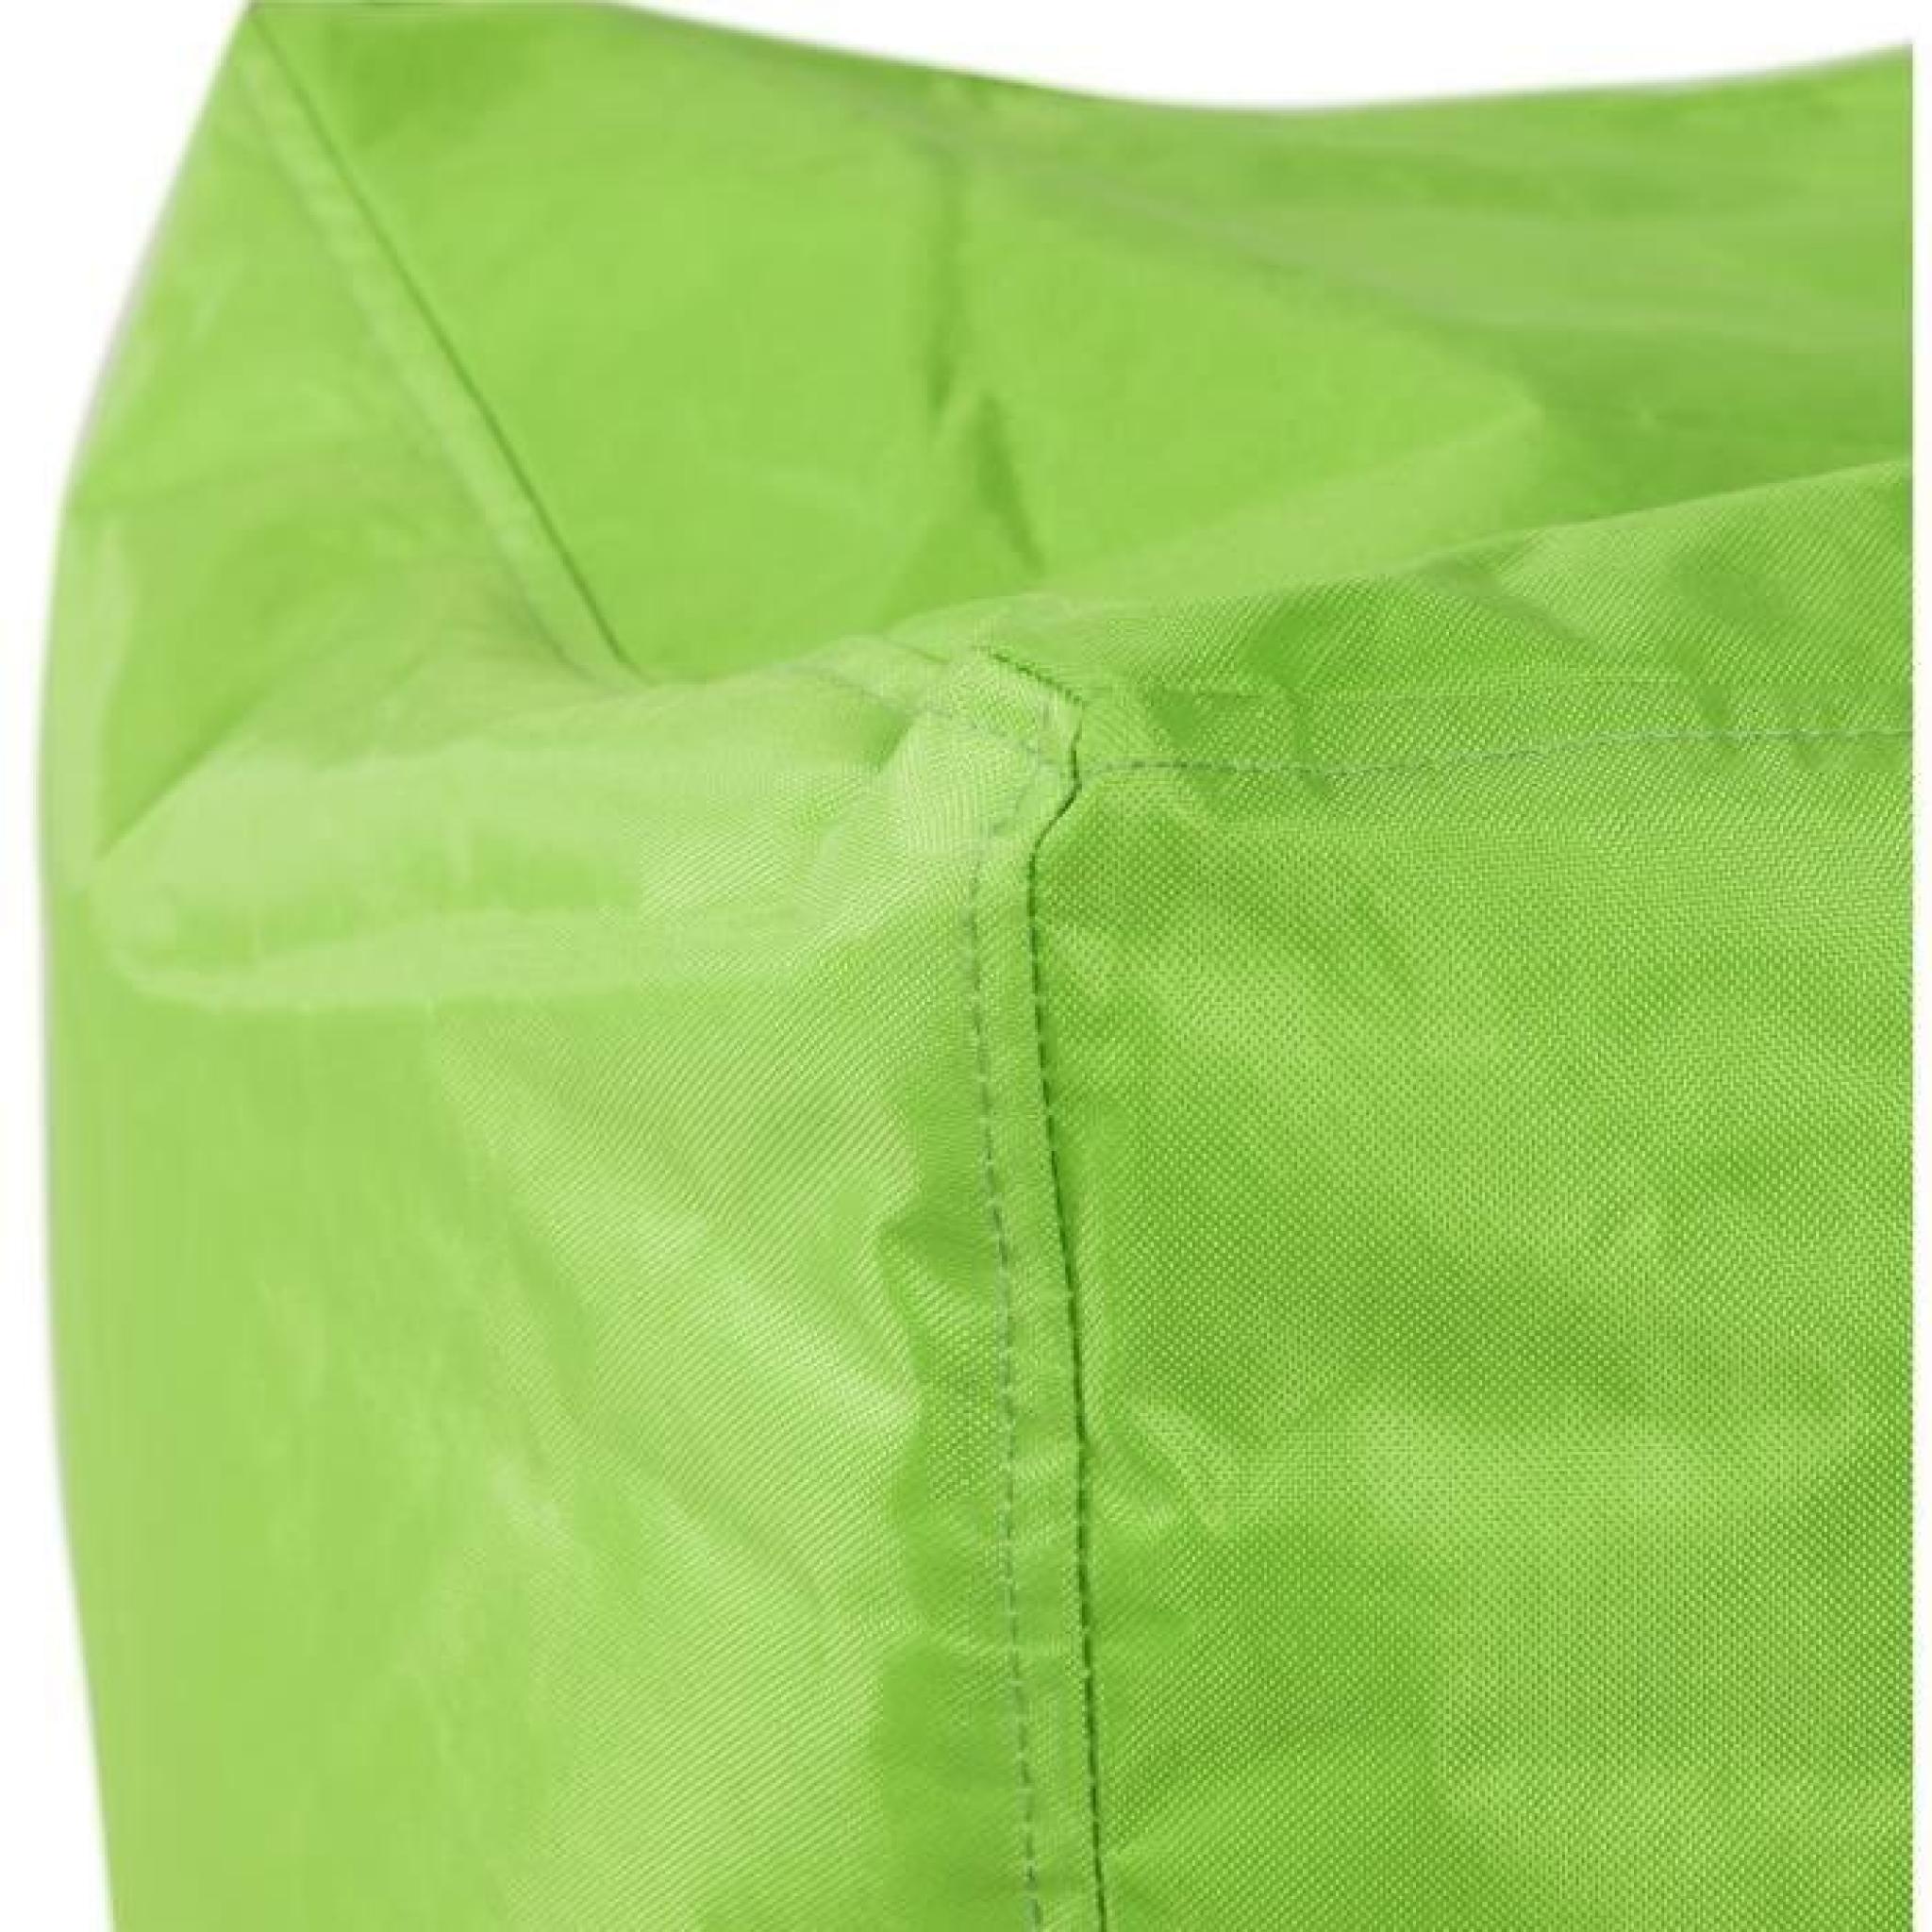 Pouf design en textile de couleur verte LS00560GE pas cher